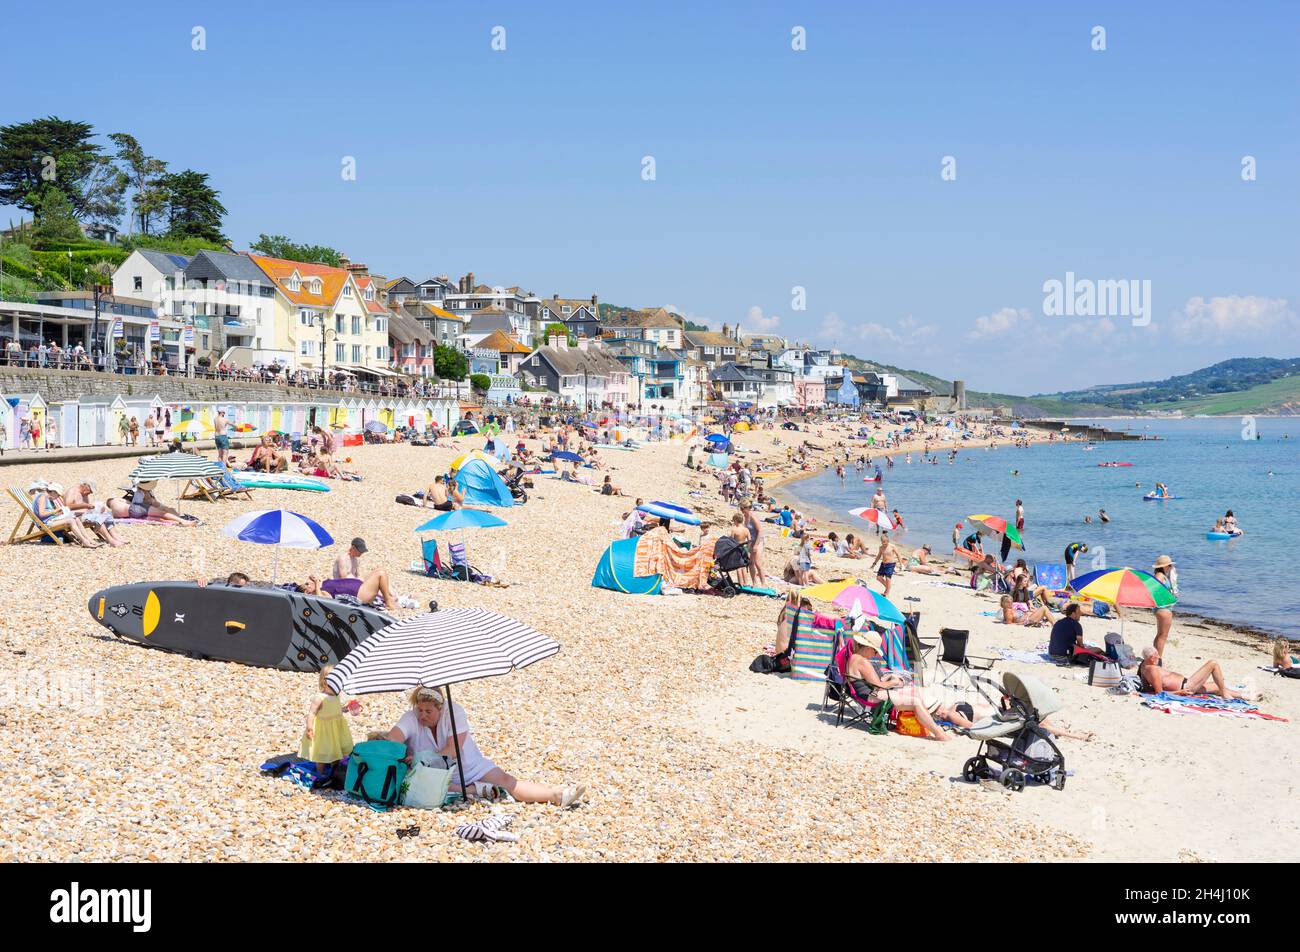 Familien am Strand mit Pop-up-Strandzelten Liegestühle Sonnenschirme und Paddle-Boards am Sandstrand bei Lyme Regis Dorset England GB Europa Stockfoto